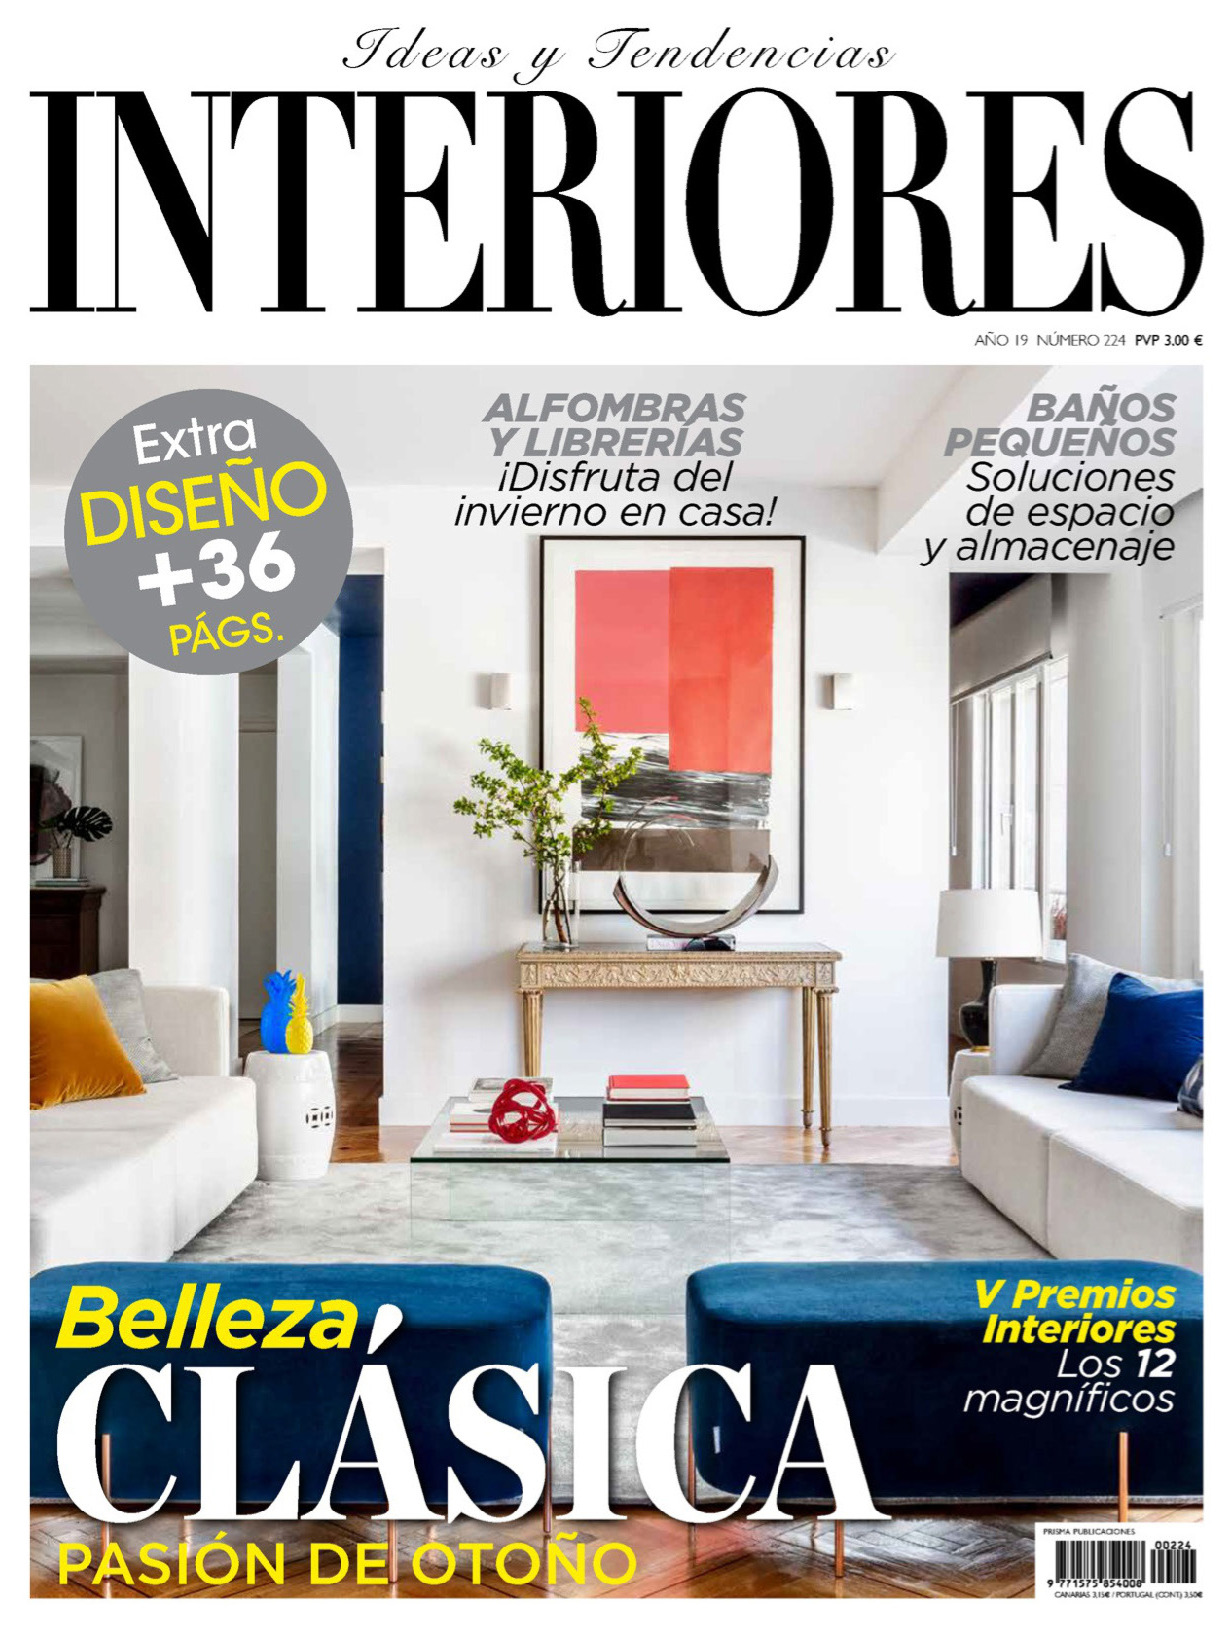 《Interiores》西班牙室内时尚杂志2019年09月号